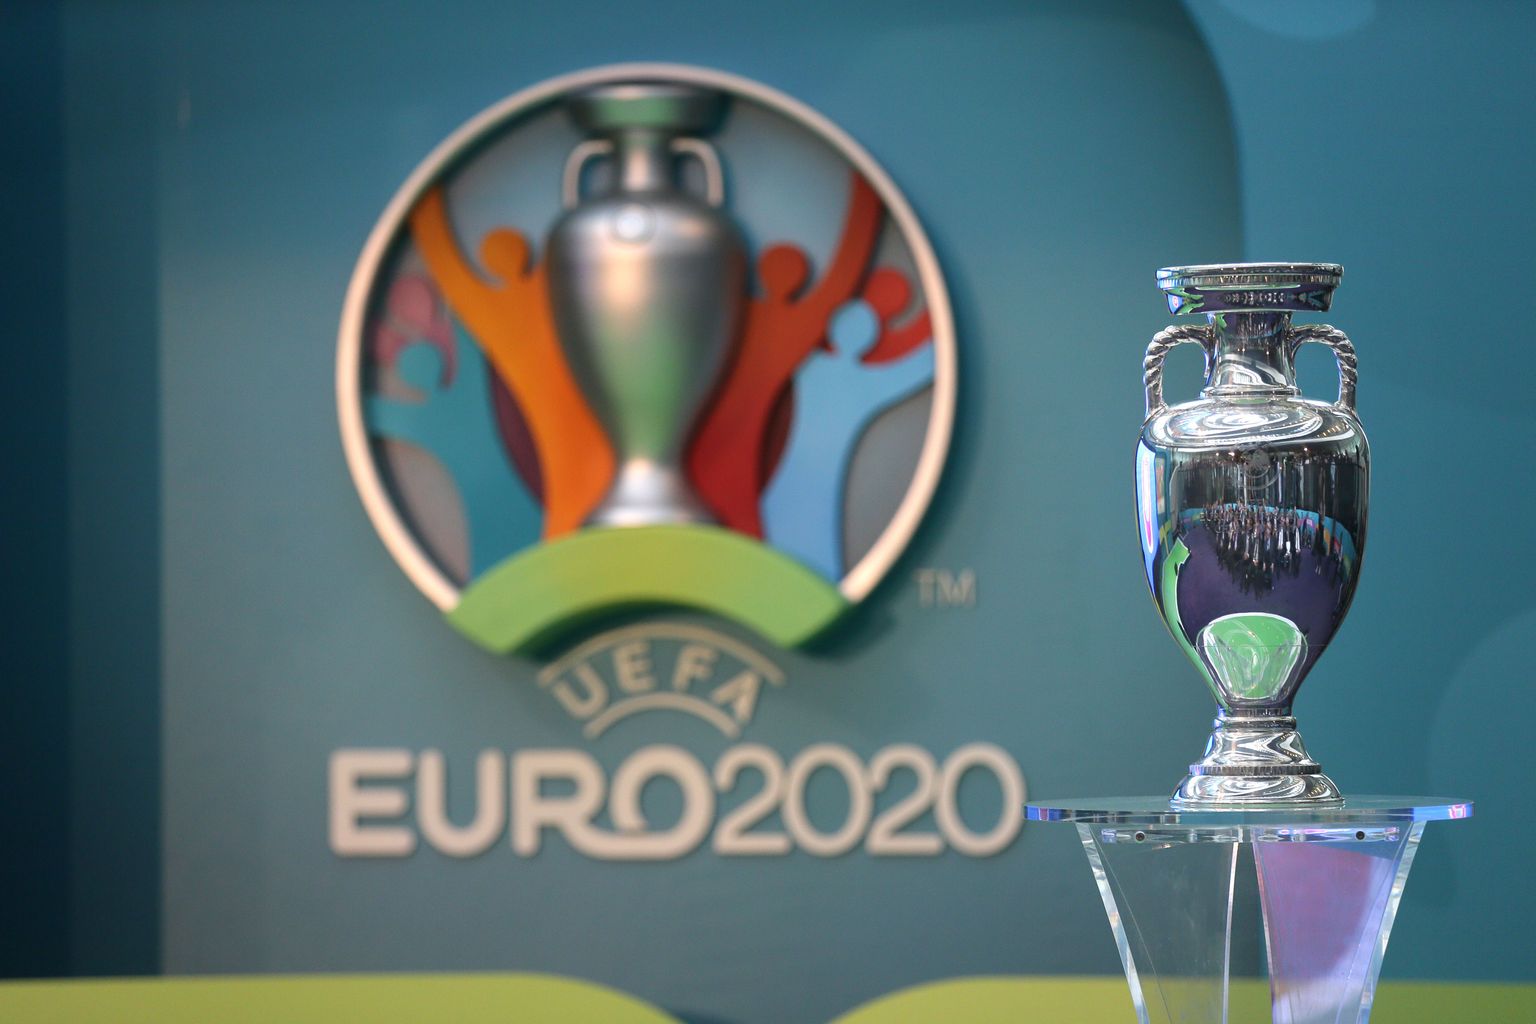 2020 jalgpalli EM toimub üle Euroopa kokku 13 riigis.